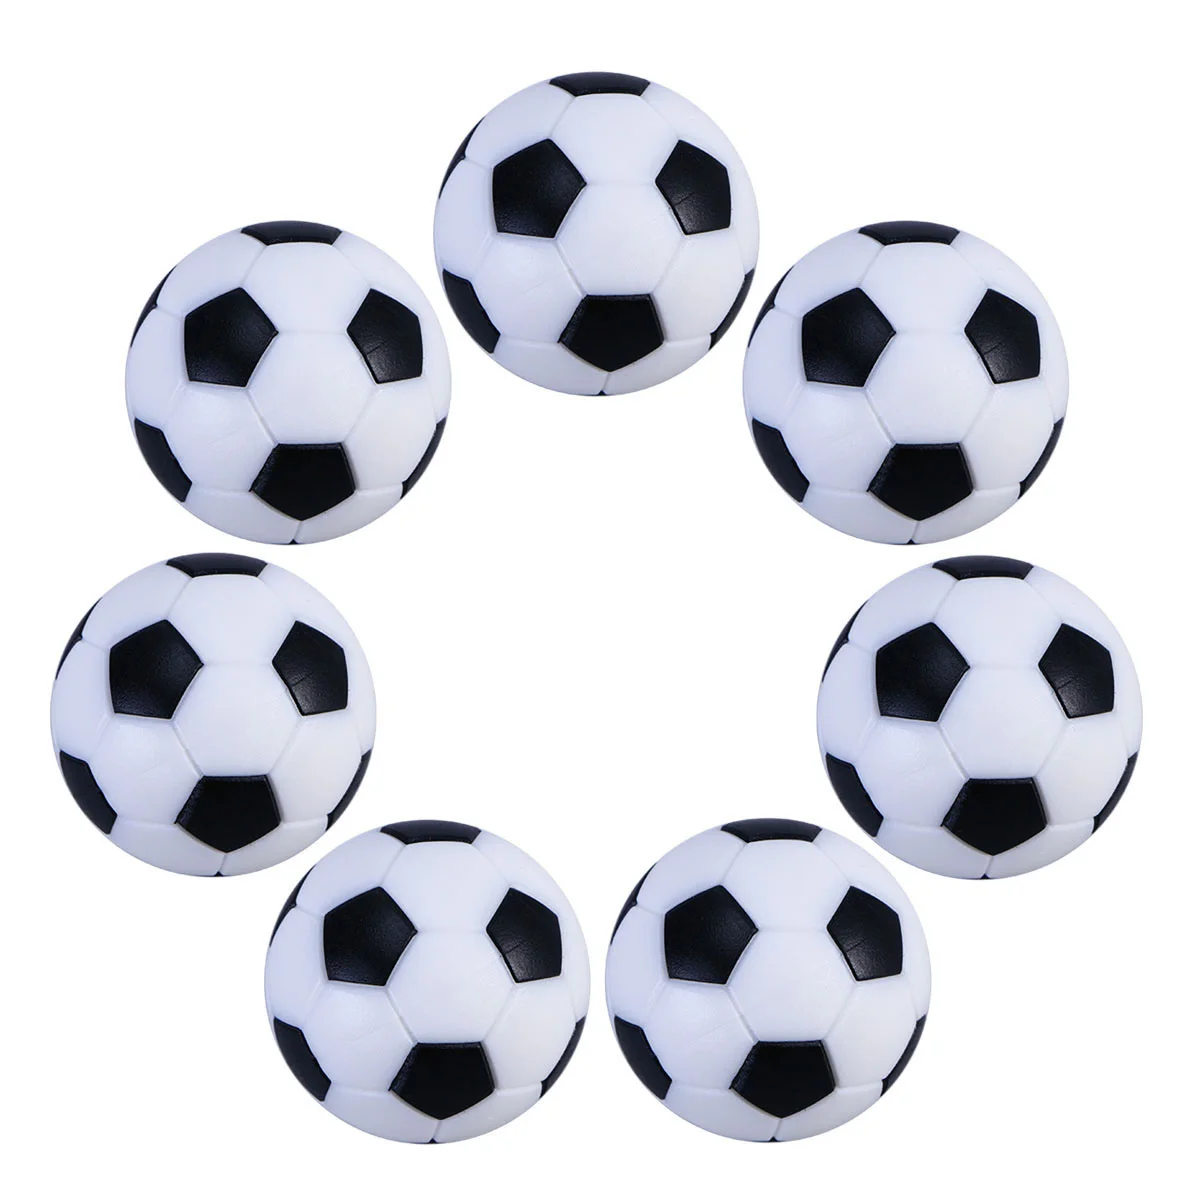 

Foosball, футбол, Tablemini, Футбольная сменная игра, черно-белая, официальная, Foosballsparty, аксессуары